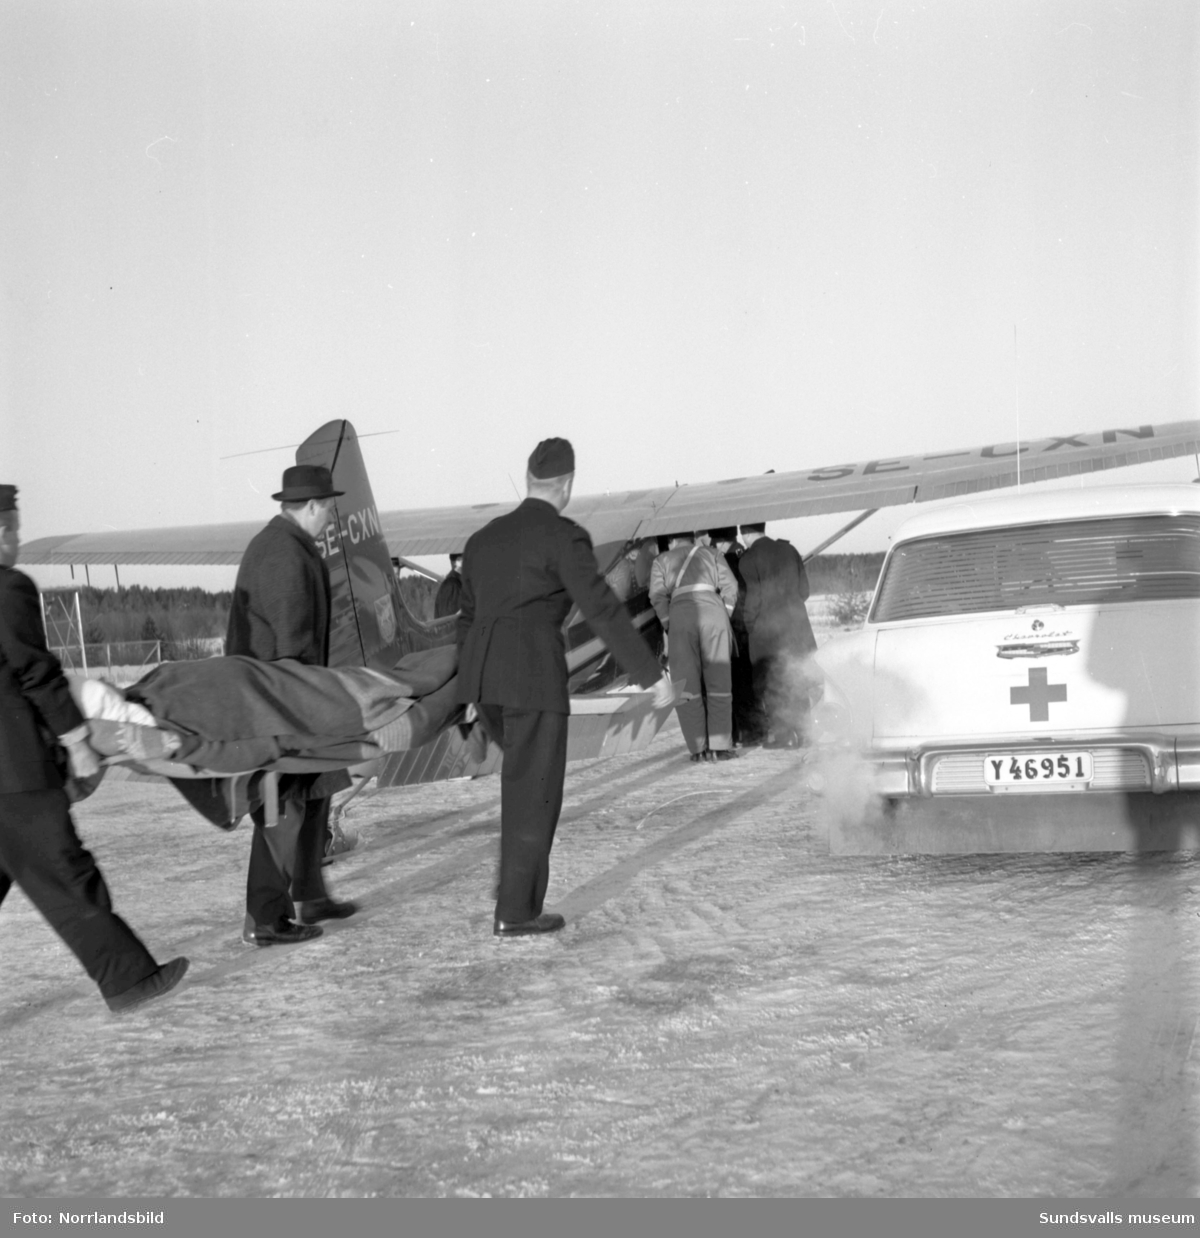 Sjuktransport från Midlanda med Gunnar "Spökis" Andersson. En norrman som skadat sig i ett fall ner i ett lastrum på en båt i hamnen ville hem till julen. Han var förlamad från bröstkorgen och neråt och den enda flygtransport som kunde ta honom till Bodö och Norge var "Spökis" Anderssons plan. Flygningen blev dock dramatisk eftersom det uppstått isbildadning på vingarna då planet befann sig vid norska gränsen. Man fick därför återvända till Sverige för nödlandning på isen vid Arjeplog. Där var det 1, 5 meter snö och en besvärlig frakt till sjukstugan berättar Bo Gert Lundgren (17 år och tillfälligt insatt som sjukvårdare) endast iförd lågskor och kostymbyxor. På radion hade man efterlyst besättningen eftersom man befarade att de hade störtat.